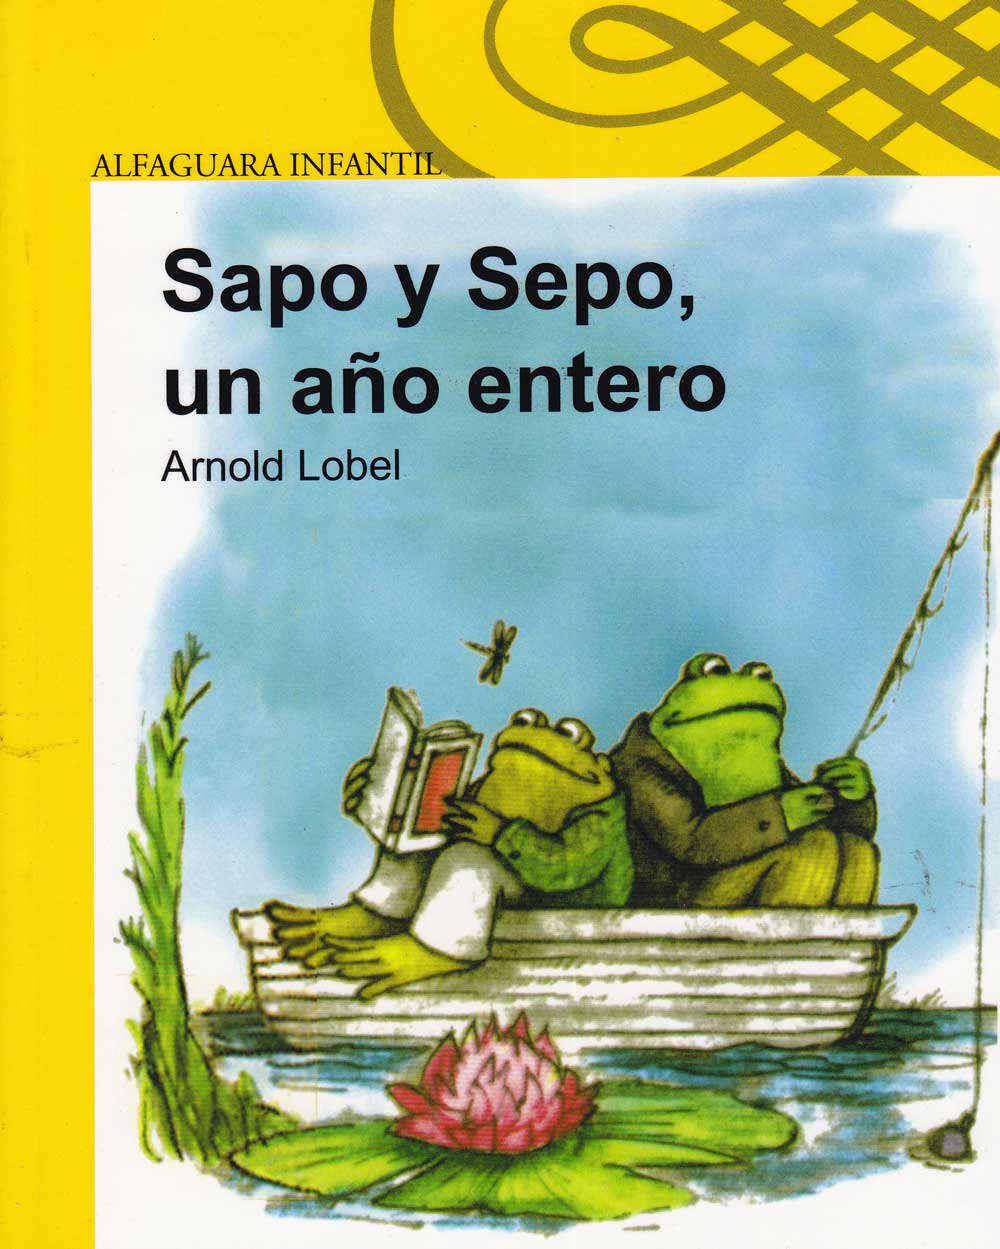 Sapo y sepo un ano entero, Frog and Toad All Year, Del Sol Books